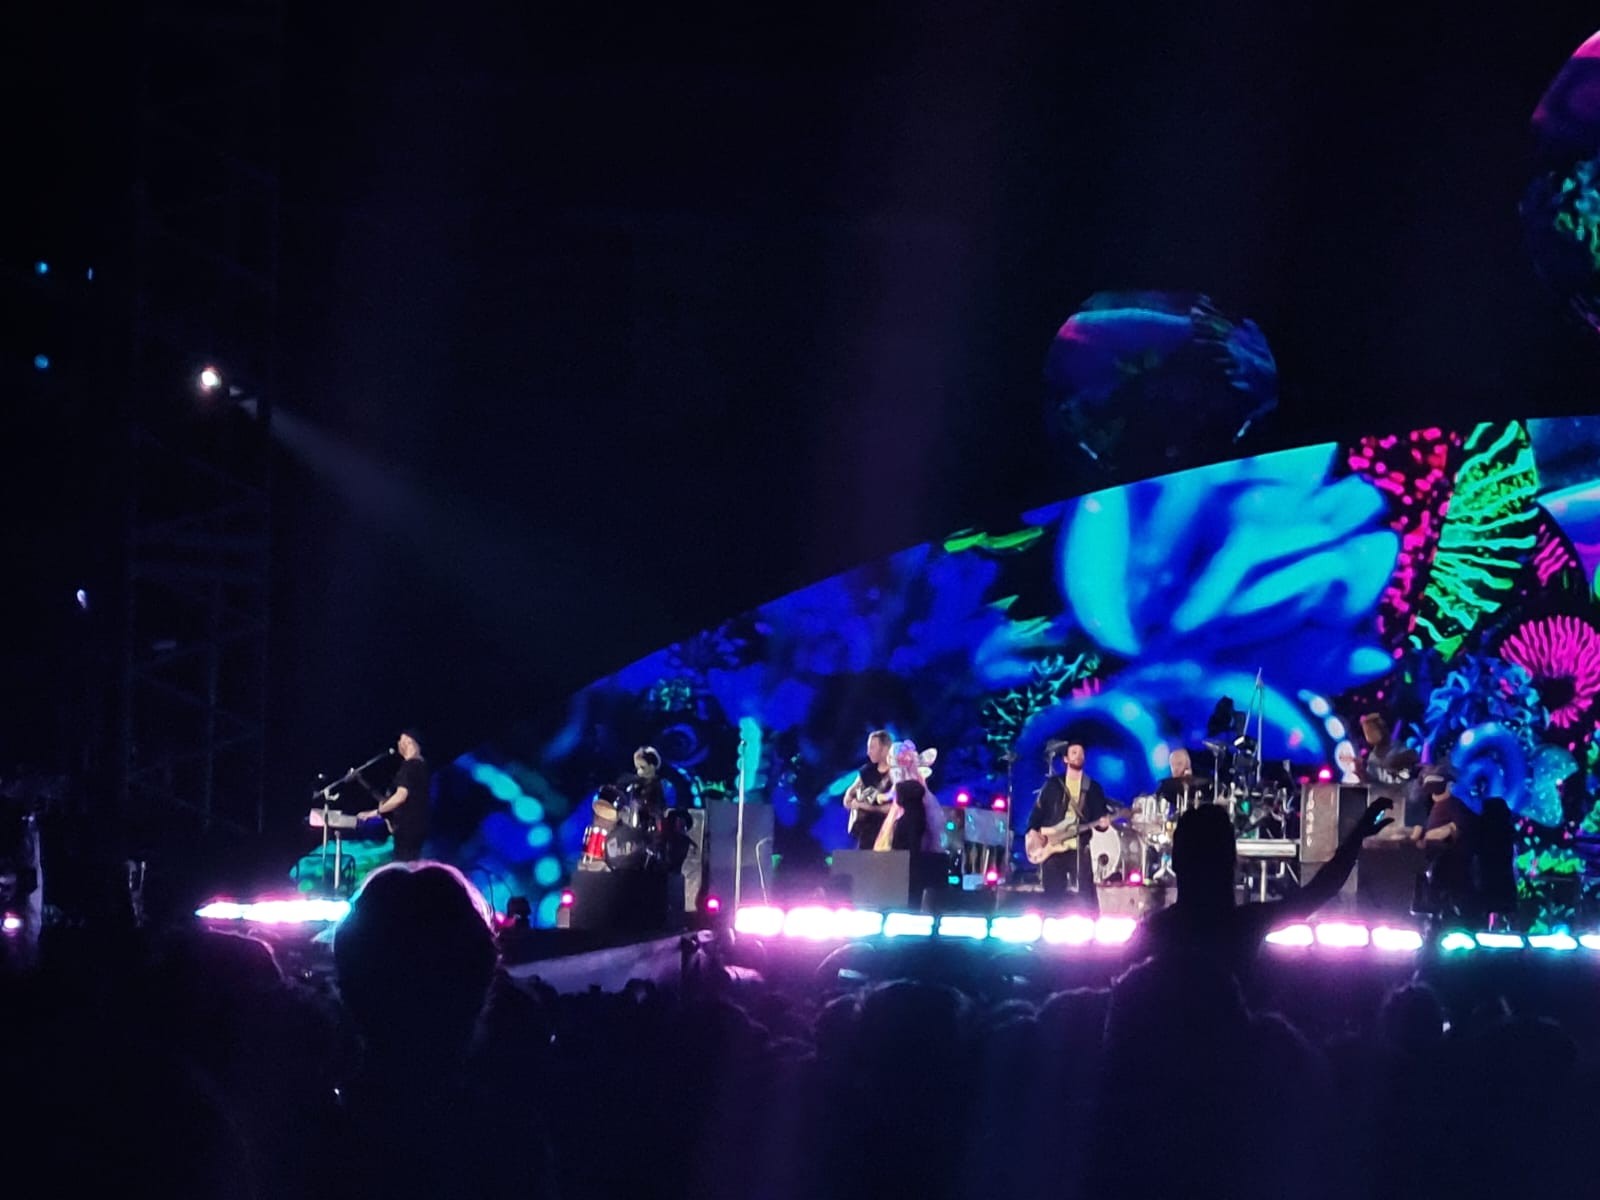 Show da banda britânica Coldplay no Estádio Nilton Santos (Engenhão), no Rio de Janeiro, em 26 de março de 2023 — Foto: Louise Queiroga